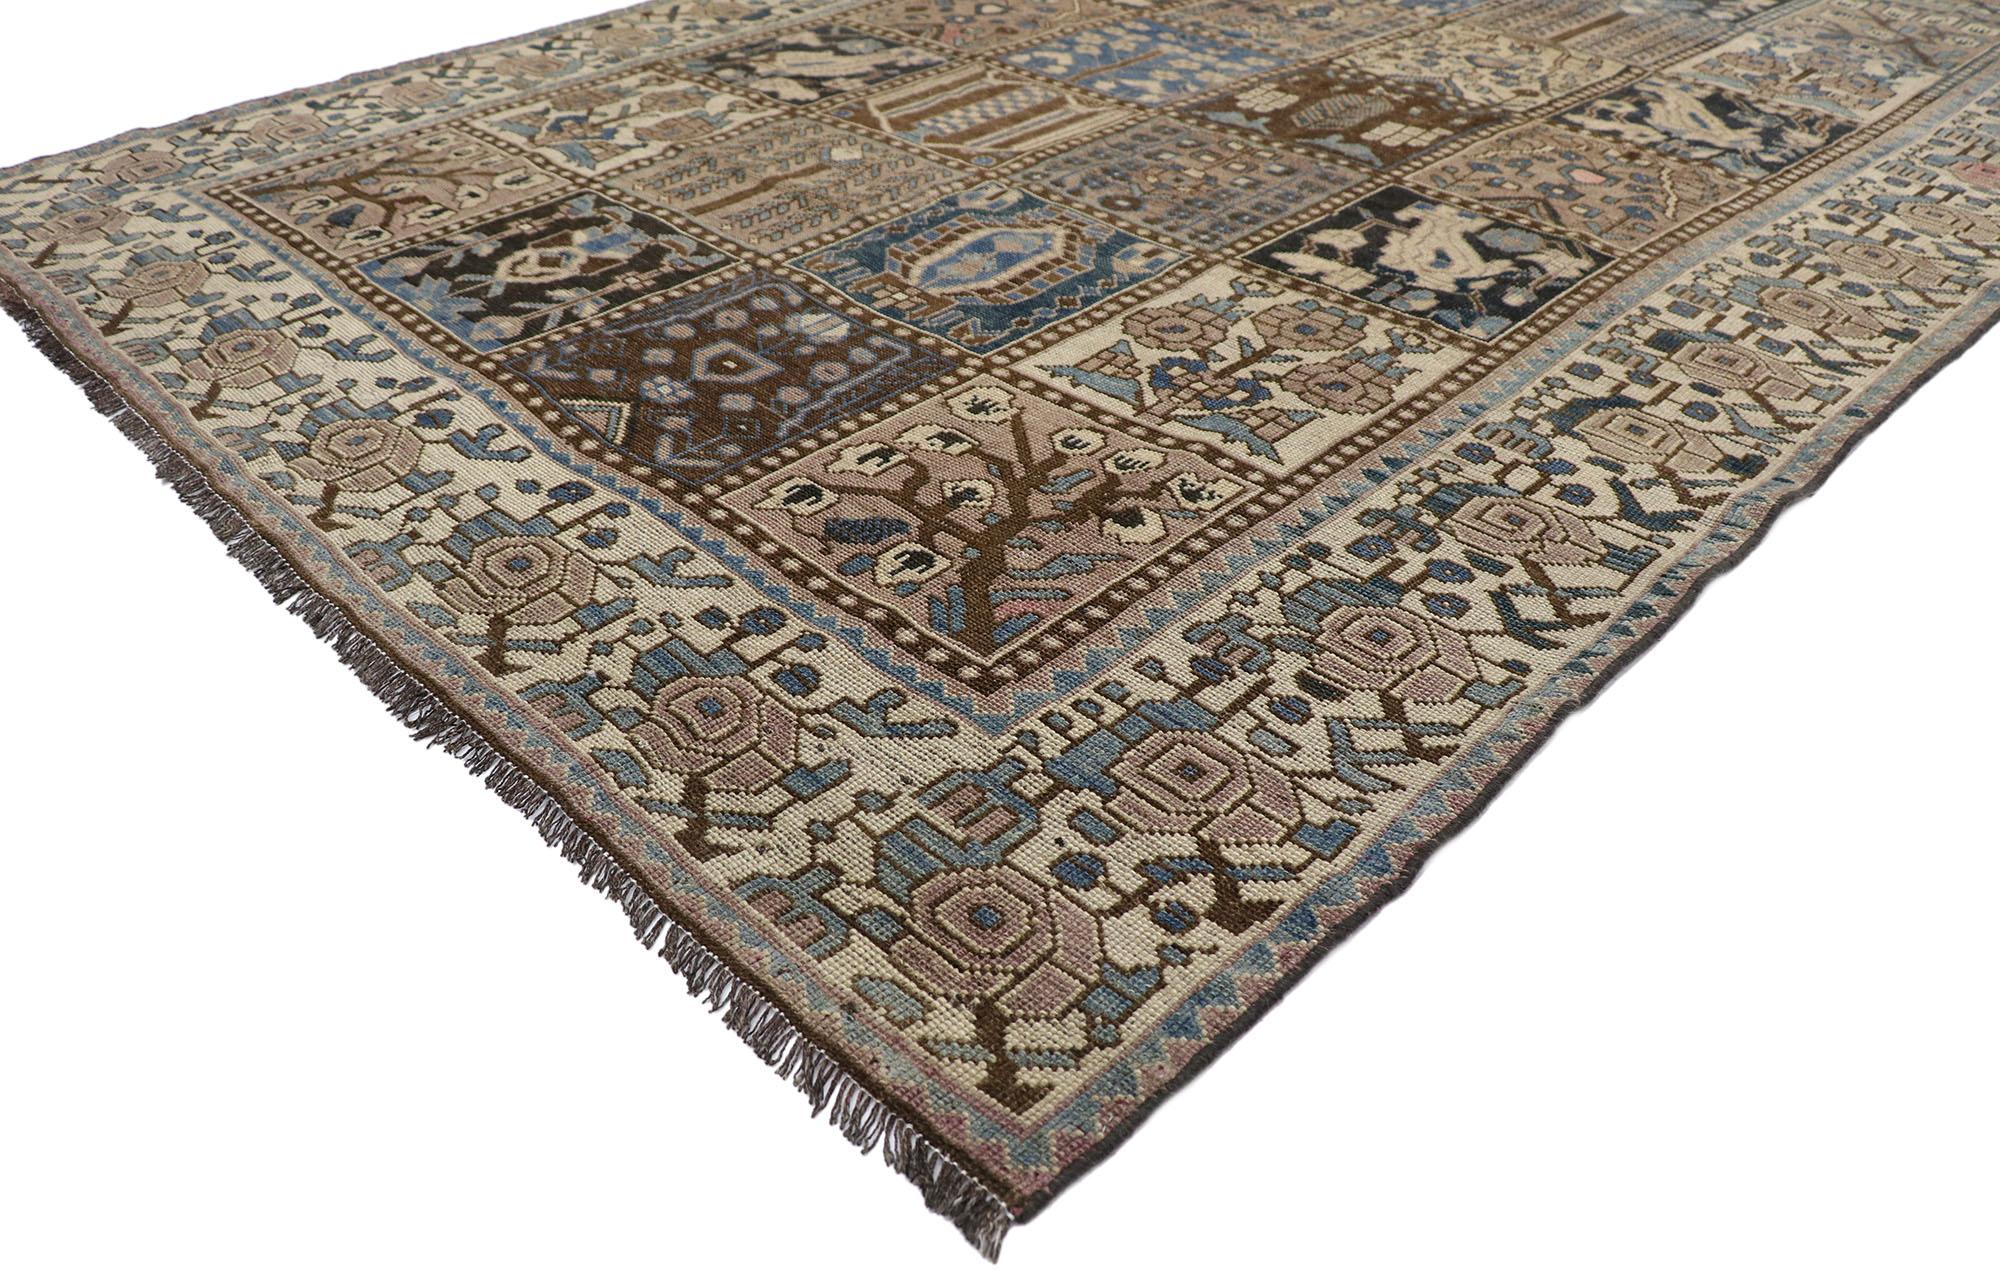 60821, antiker persischer Shiraz-Teppich mit Garden Panel Four Seasons-Muster. Dieser handgeknüpfte, antike persische Shiraz-Teppich aus Wolle, der sich durch eine besondere Ausgewogenheit auszeichnet, erhält einen gepflegten, zeitlosen Look und